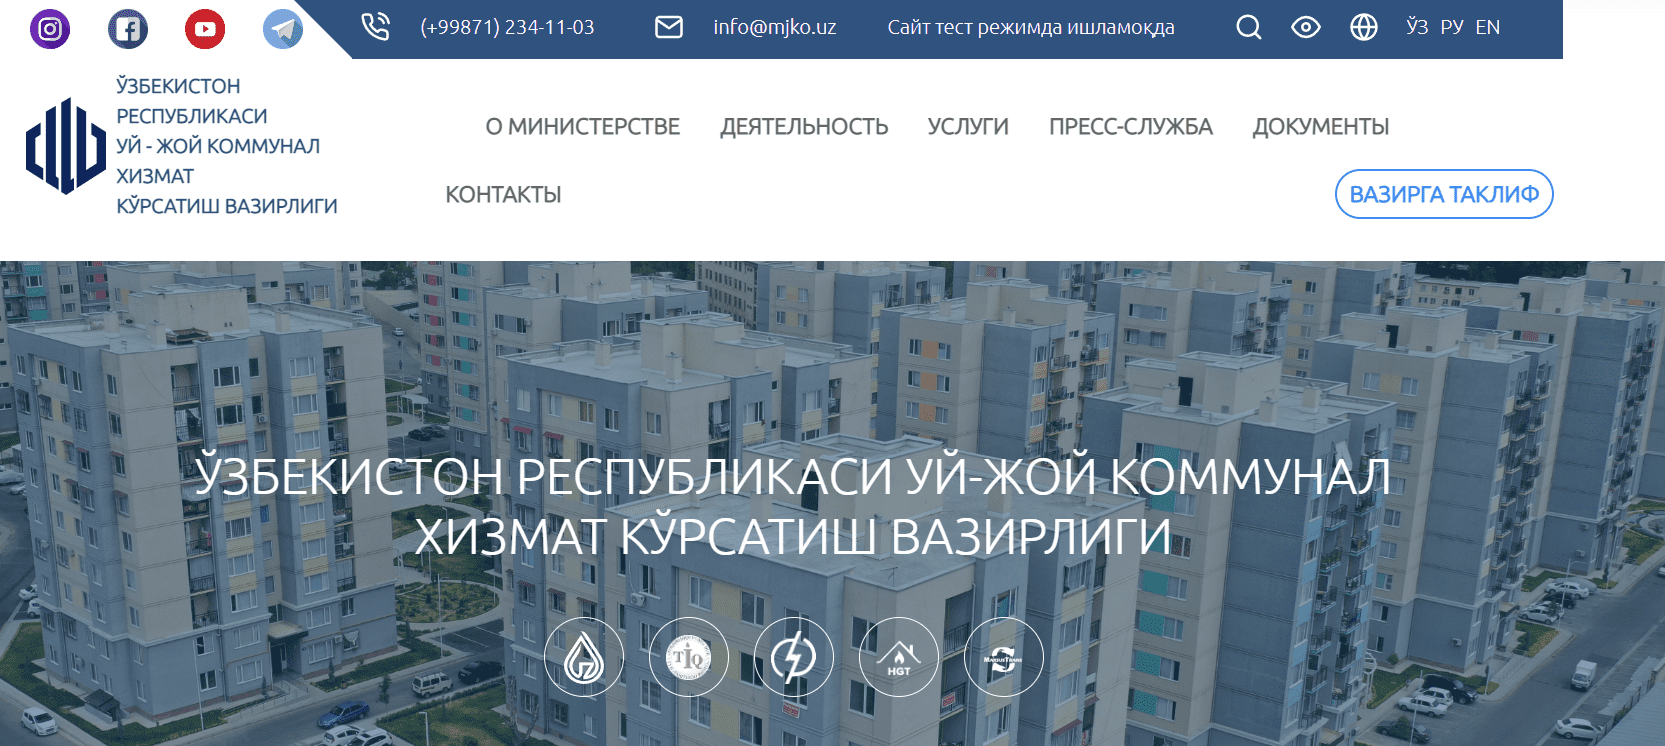 Министерство жилищно-коммунального обслуживания Республики Узбекистан (mjko.uz)